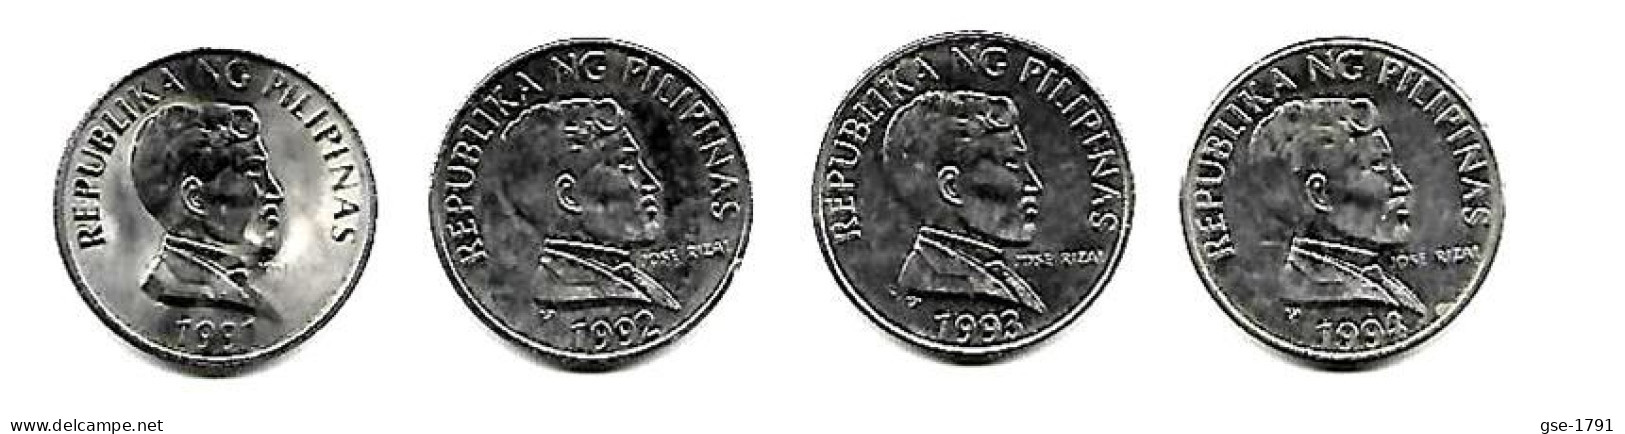 PHILIPPINES  Réforme Coinage, 1 Peso  José RIZAL Petit  BULL   KM 243.2  Série Complète De 4 Monnaies - Philippinen